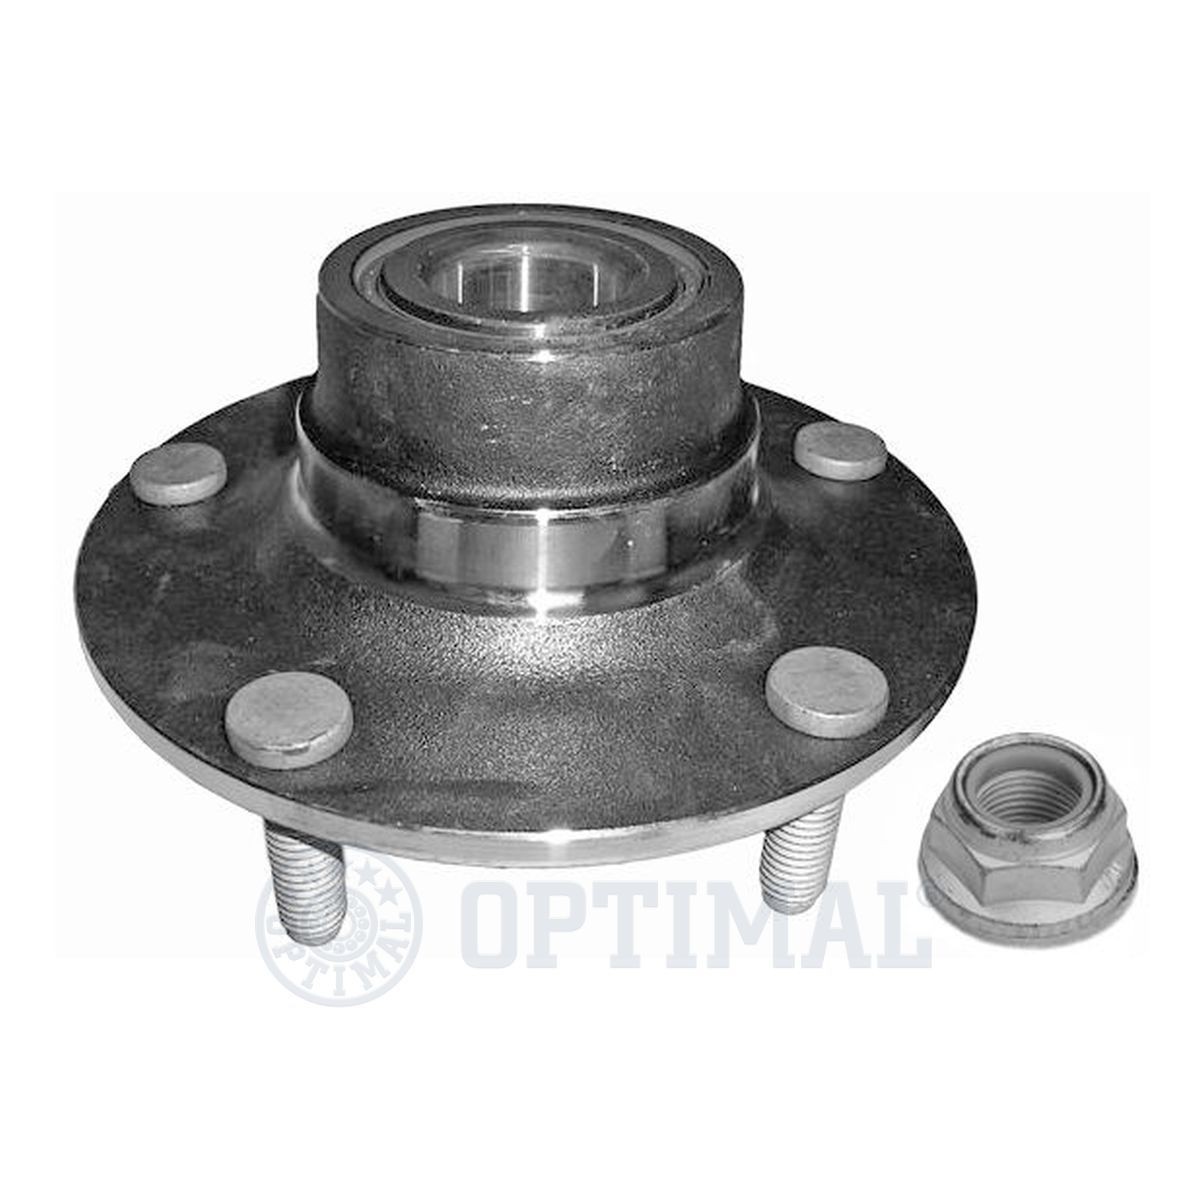 OPTIMAL 302255 Wheel bearing kit 190 mm